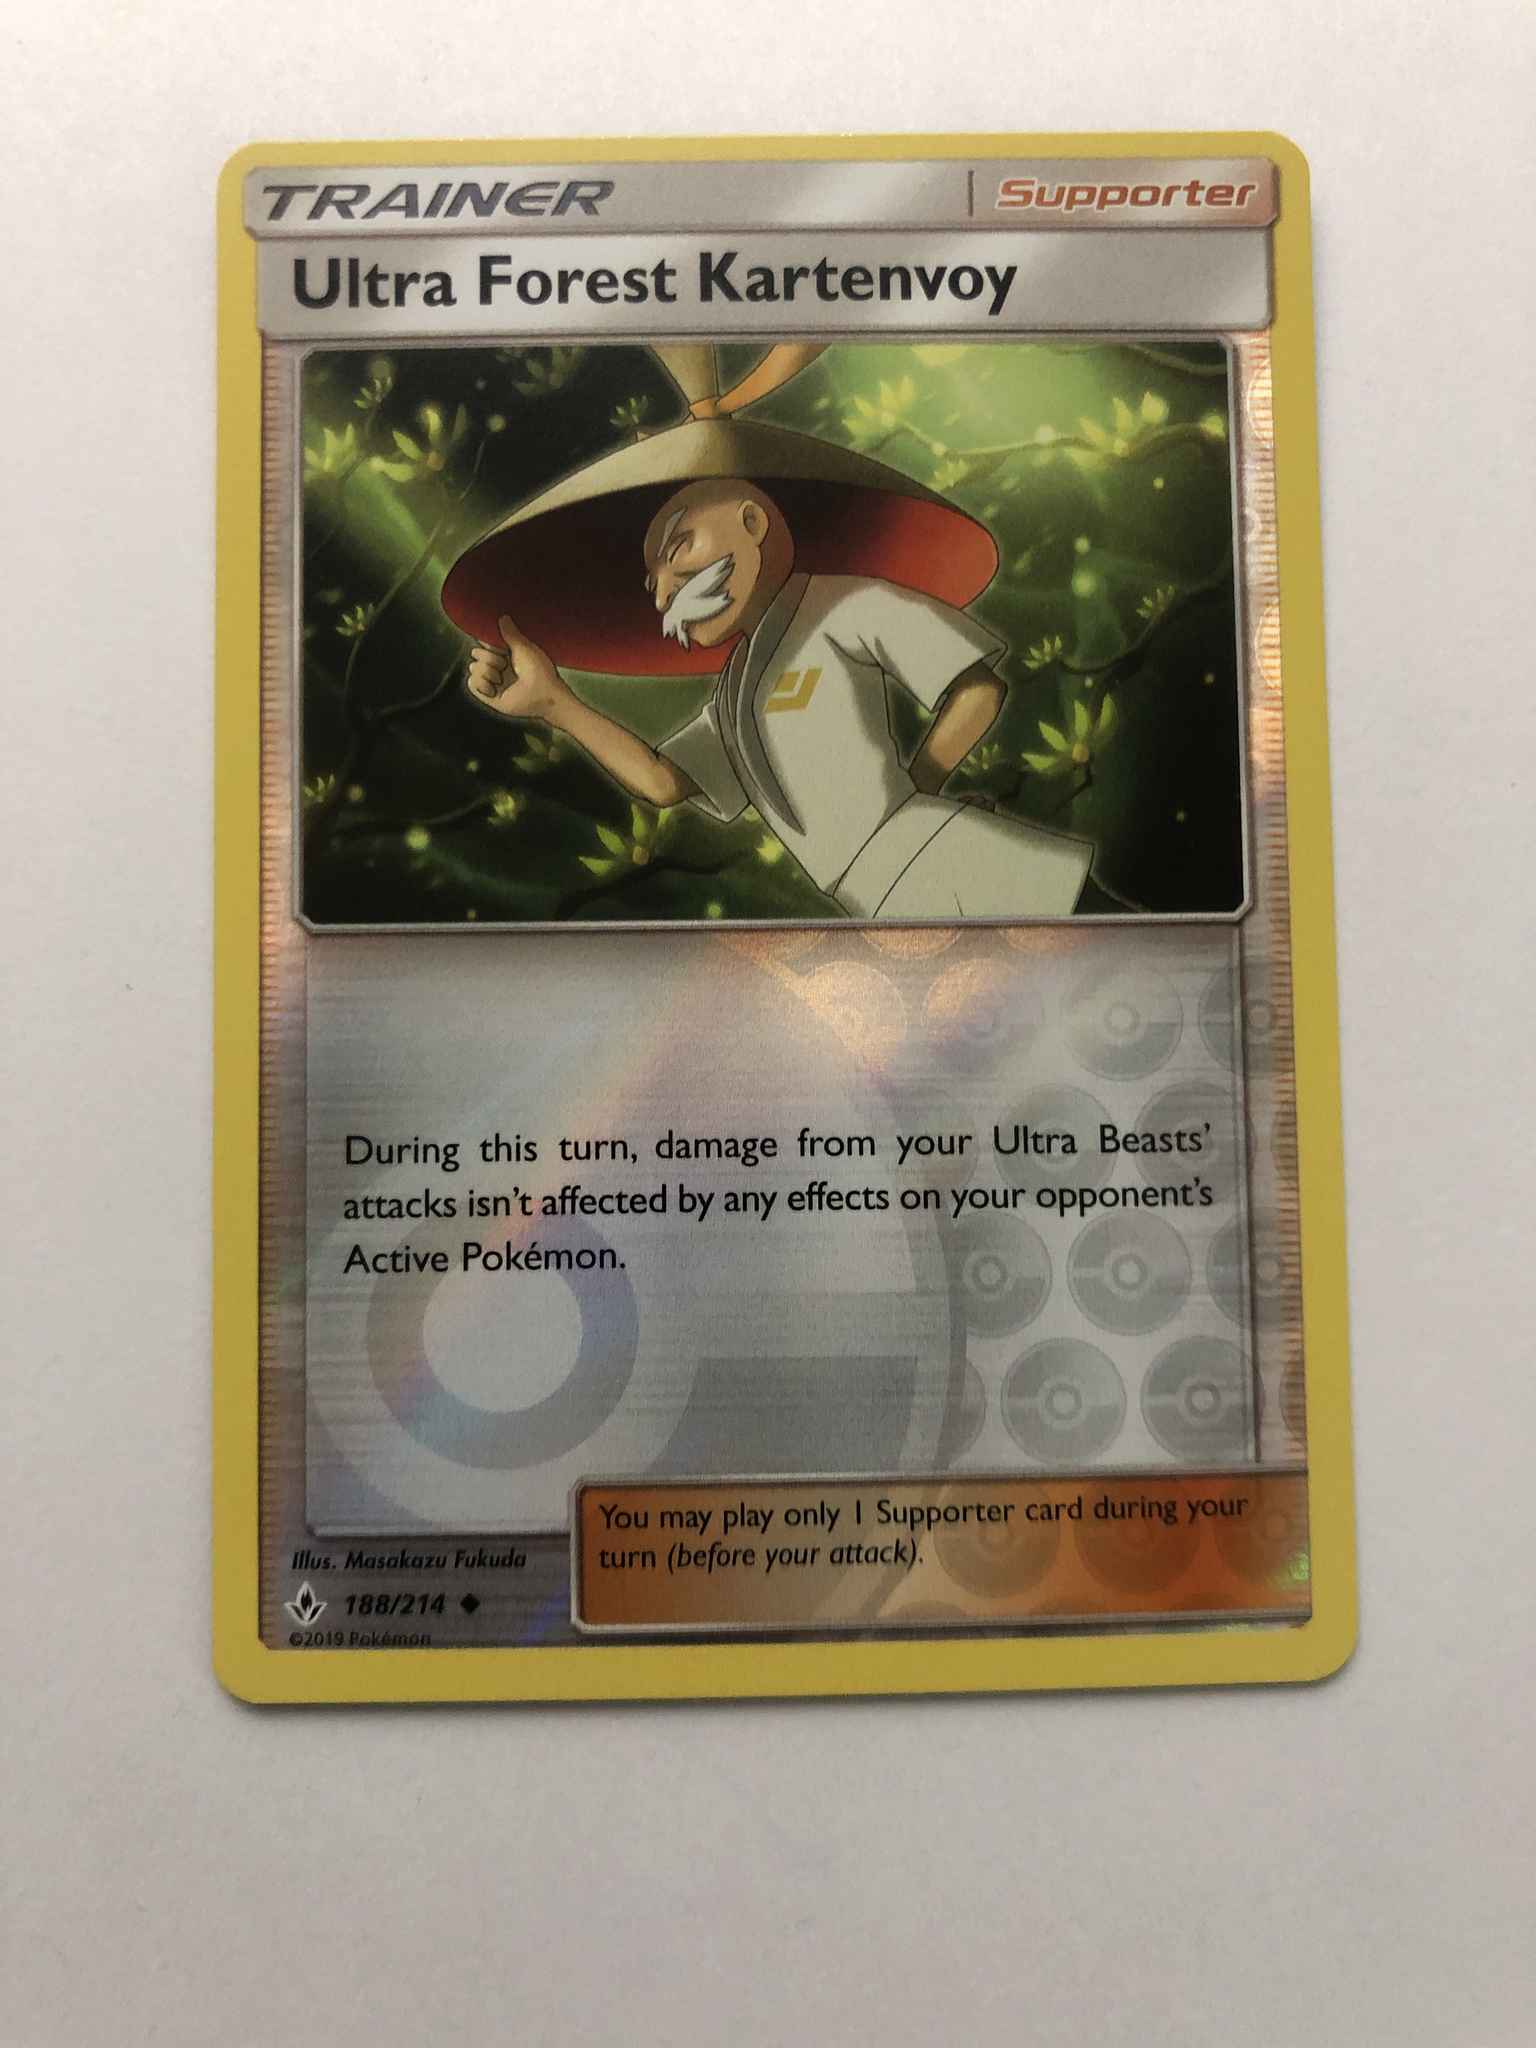 4x Ultra Forest Kartenvoy 188/214 TRAINER Pokemon Unbroken Bonds